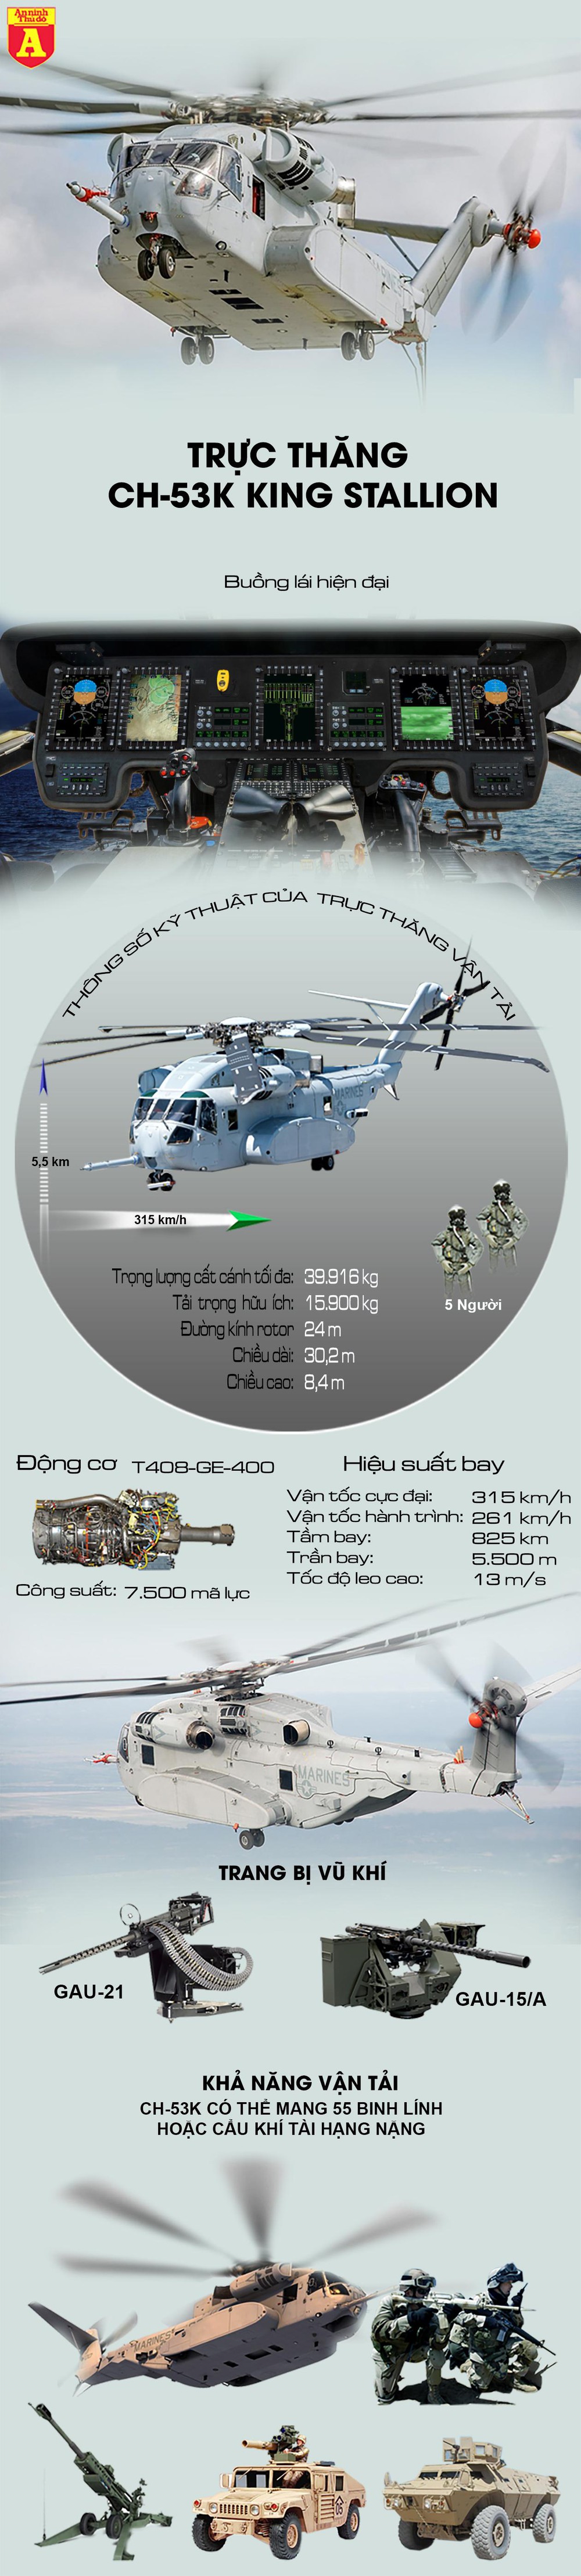 Cận cảnh "siêu trực thăng" CH-53K  - Ảnh 1